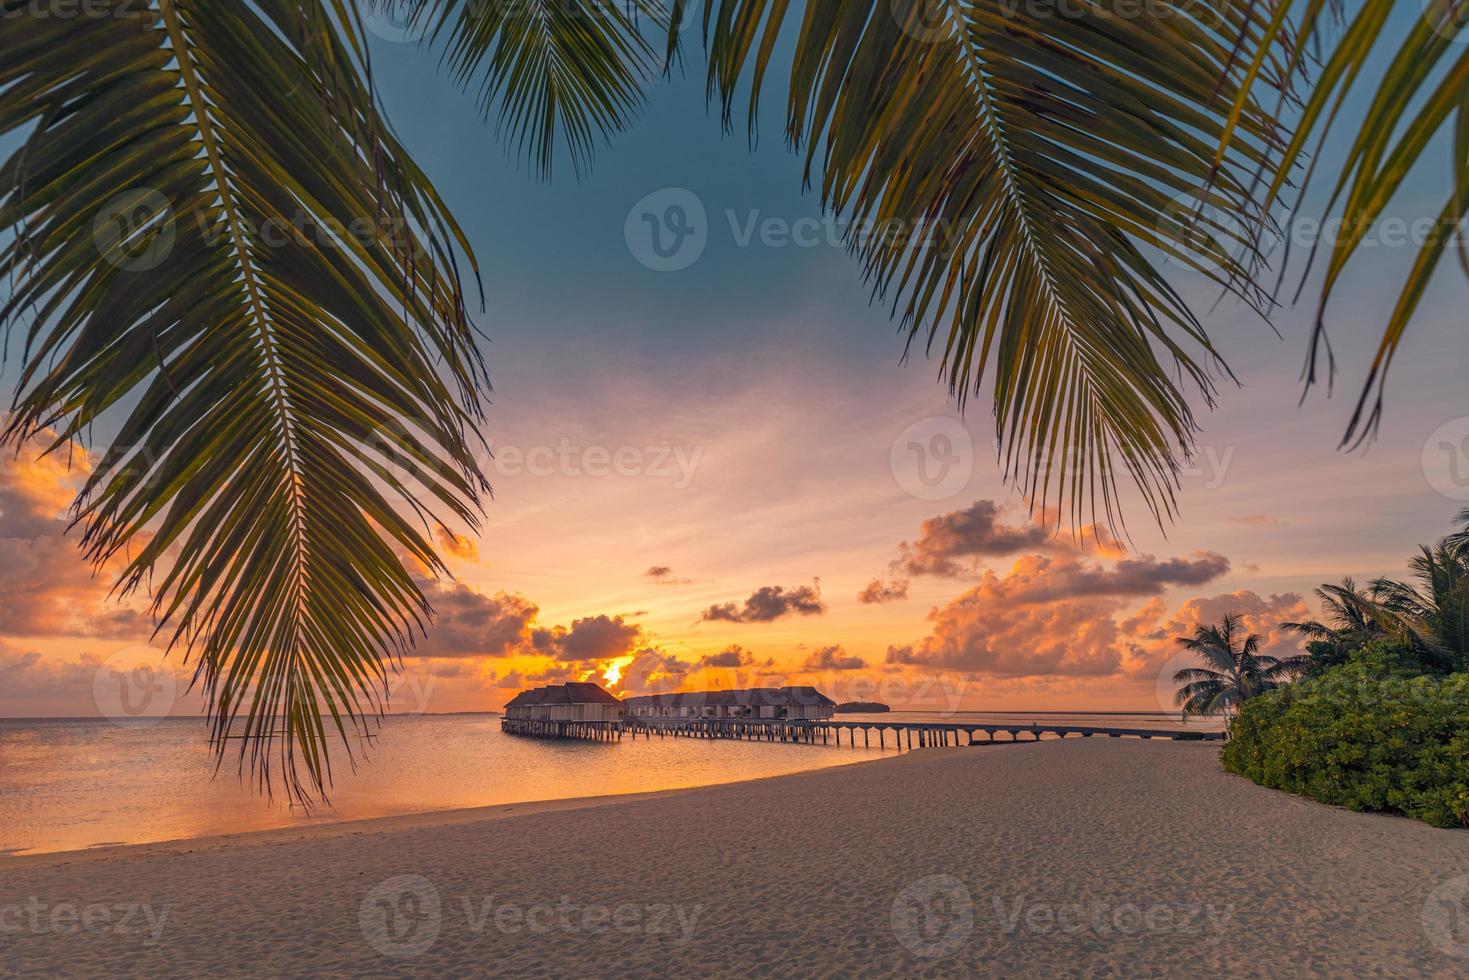 fantastico isola spiaggia e tramonto cielo con palma albero le foglie. lusso tropicale spiaggia paesaggio, di legno molo in al di sopra di acqua ville, bungalow sorprendente scenico. vacanza ricorrere, esotico Hotel paesaggio foto